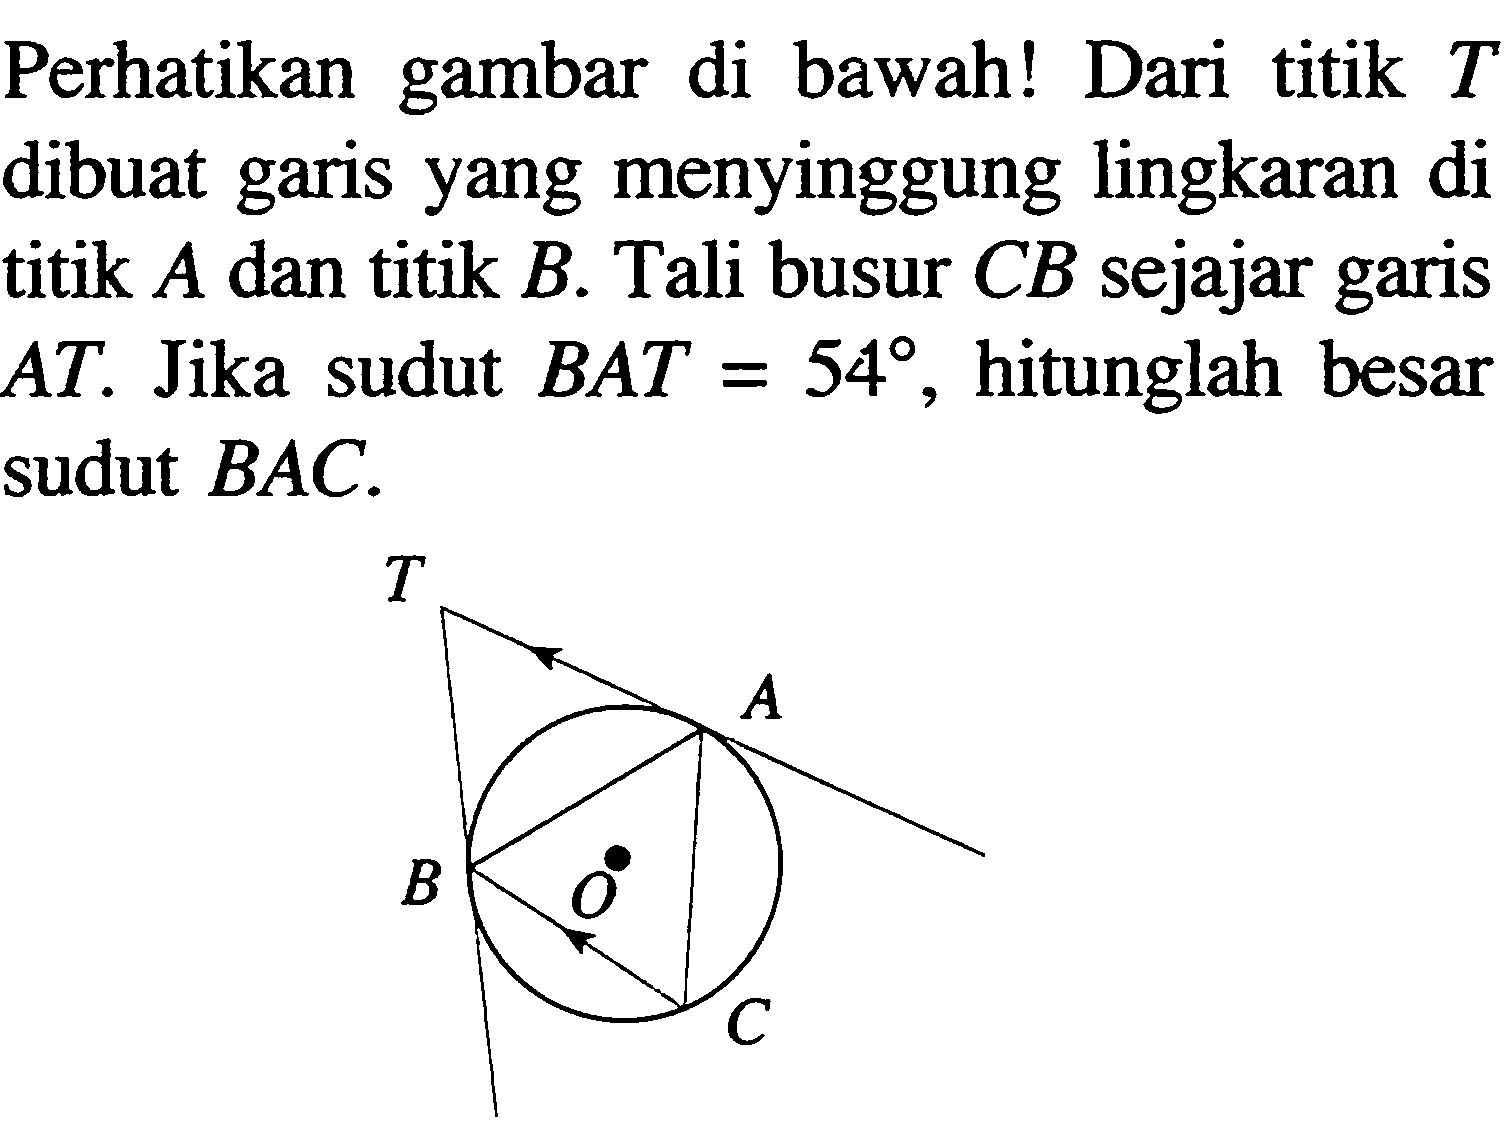 Perhatikan gambar di bawah! Dari titik T dibuat garis yang menyinggung lingkaran di titik A dan titik B. Tali busur CB sejajar garis AT. Jika sudut BAT=54, hitunglah besar sudut BAC. 